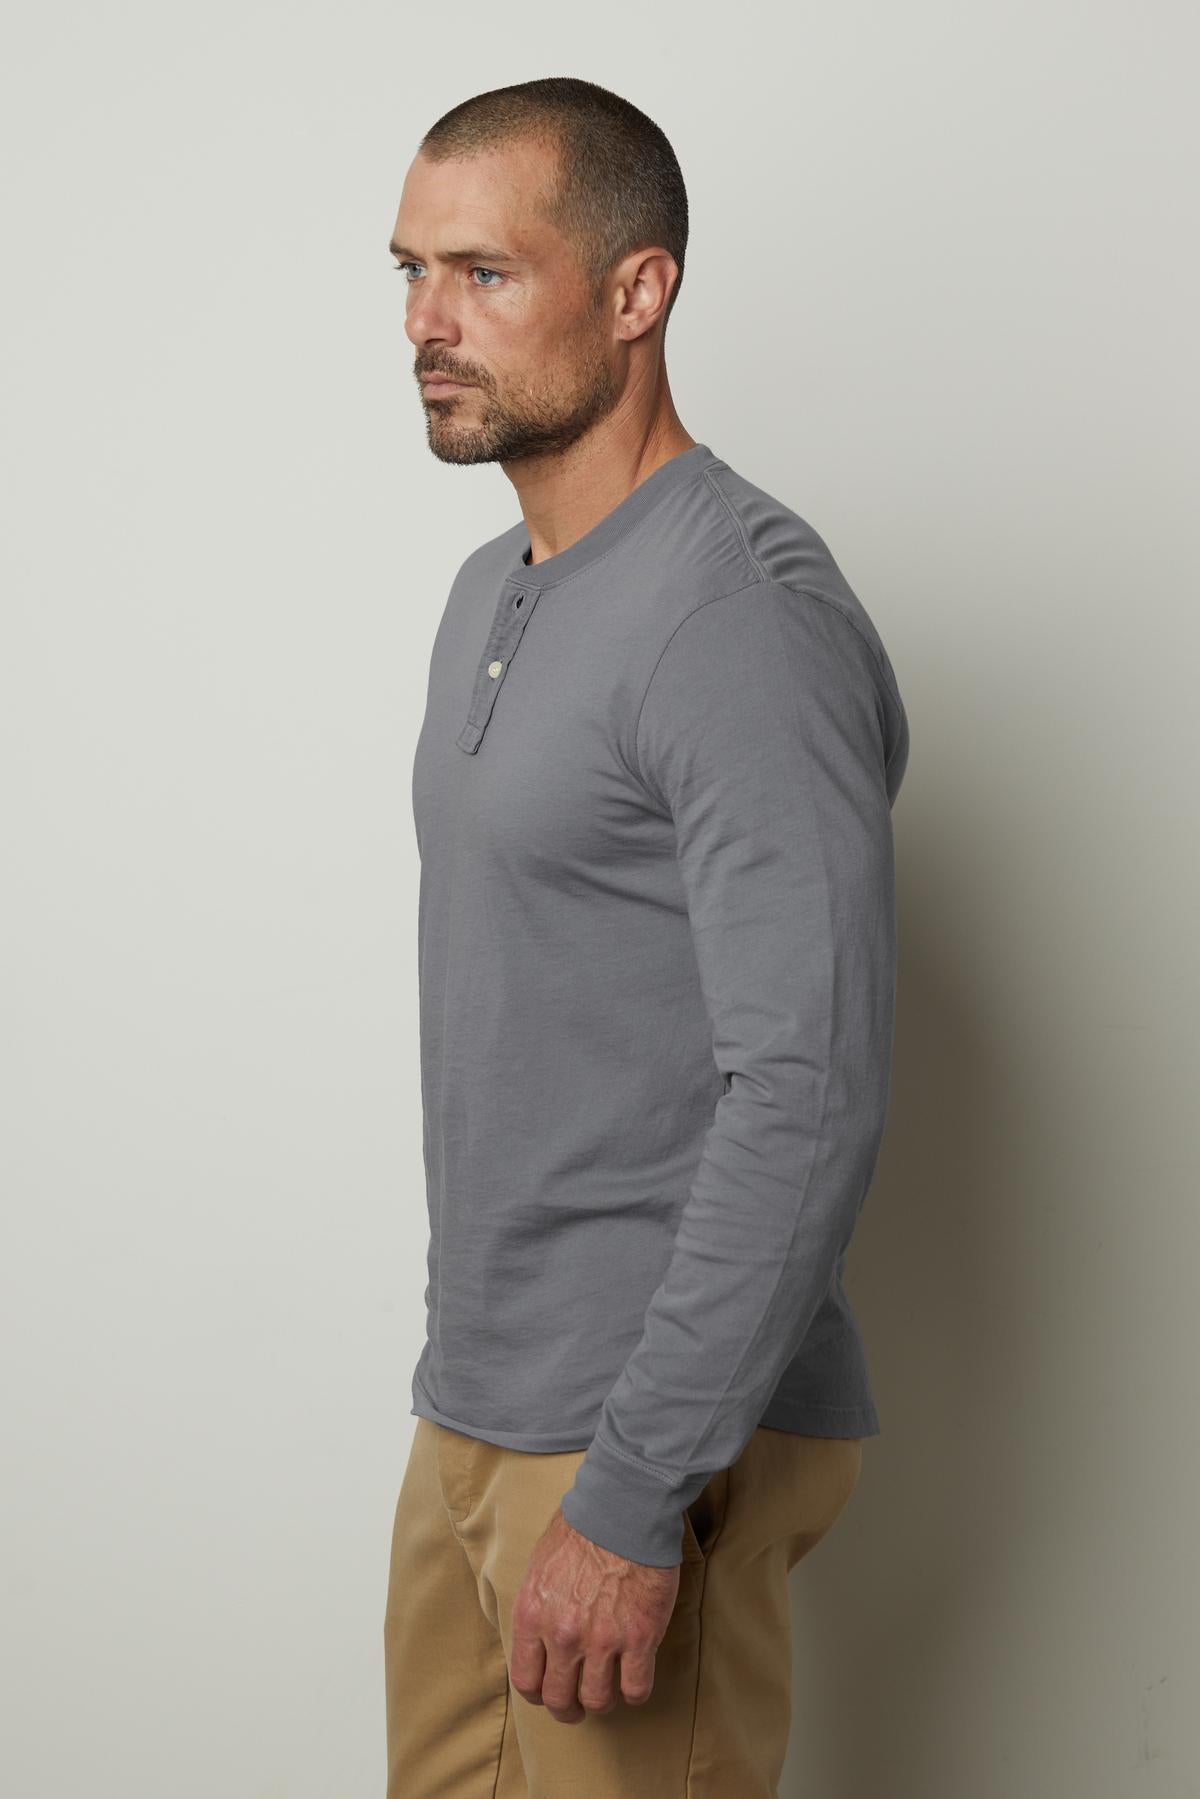 A man in a versatile gray Velvet by Graham & Spencer BRADEN HENLEY shirt and khaki pants.-35782157729985